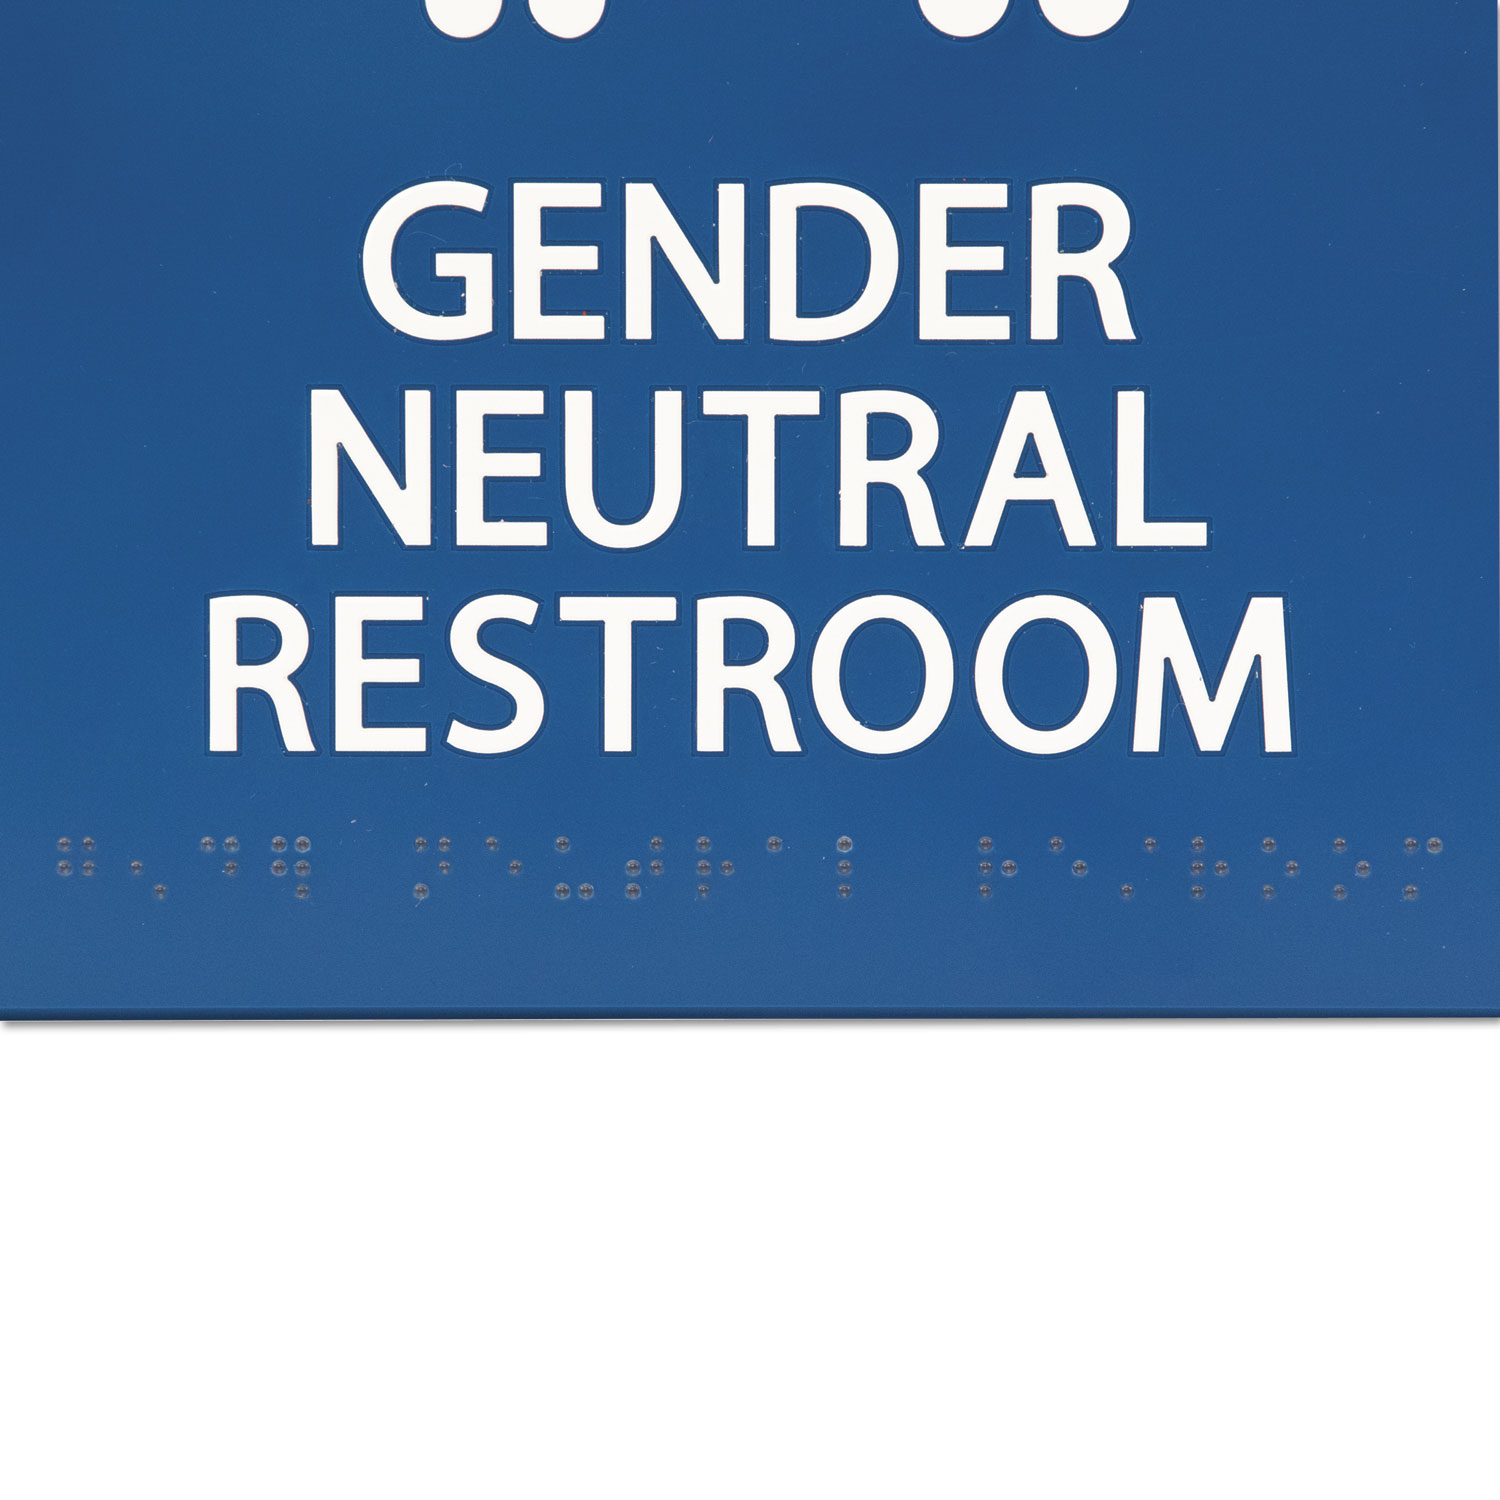 Gender Neutral ADA Signs, 8